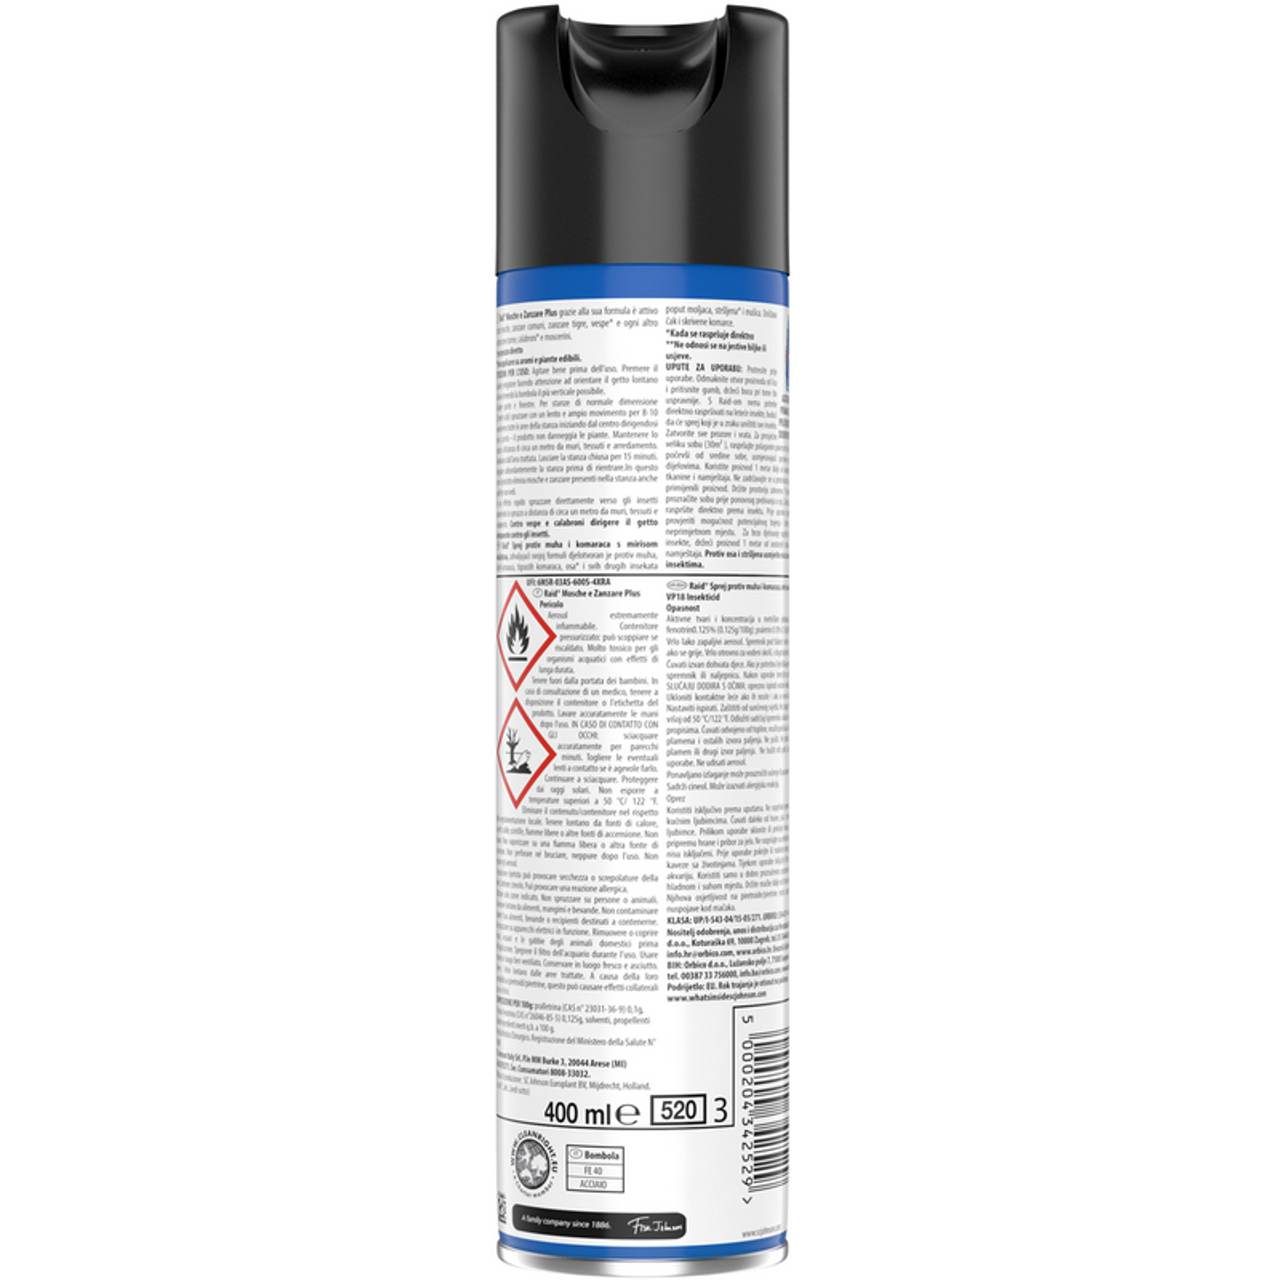 RAID -Insektizidspray -Fliegen und plus Mücken schnelle Wirkung mit Eukalyptusöl -Aroma 400 ml